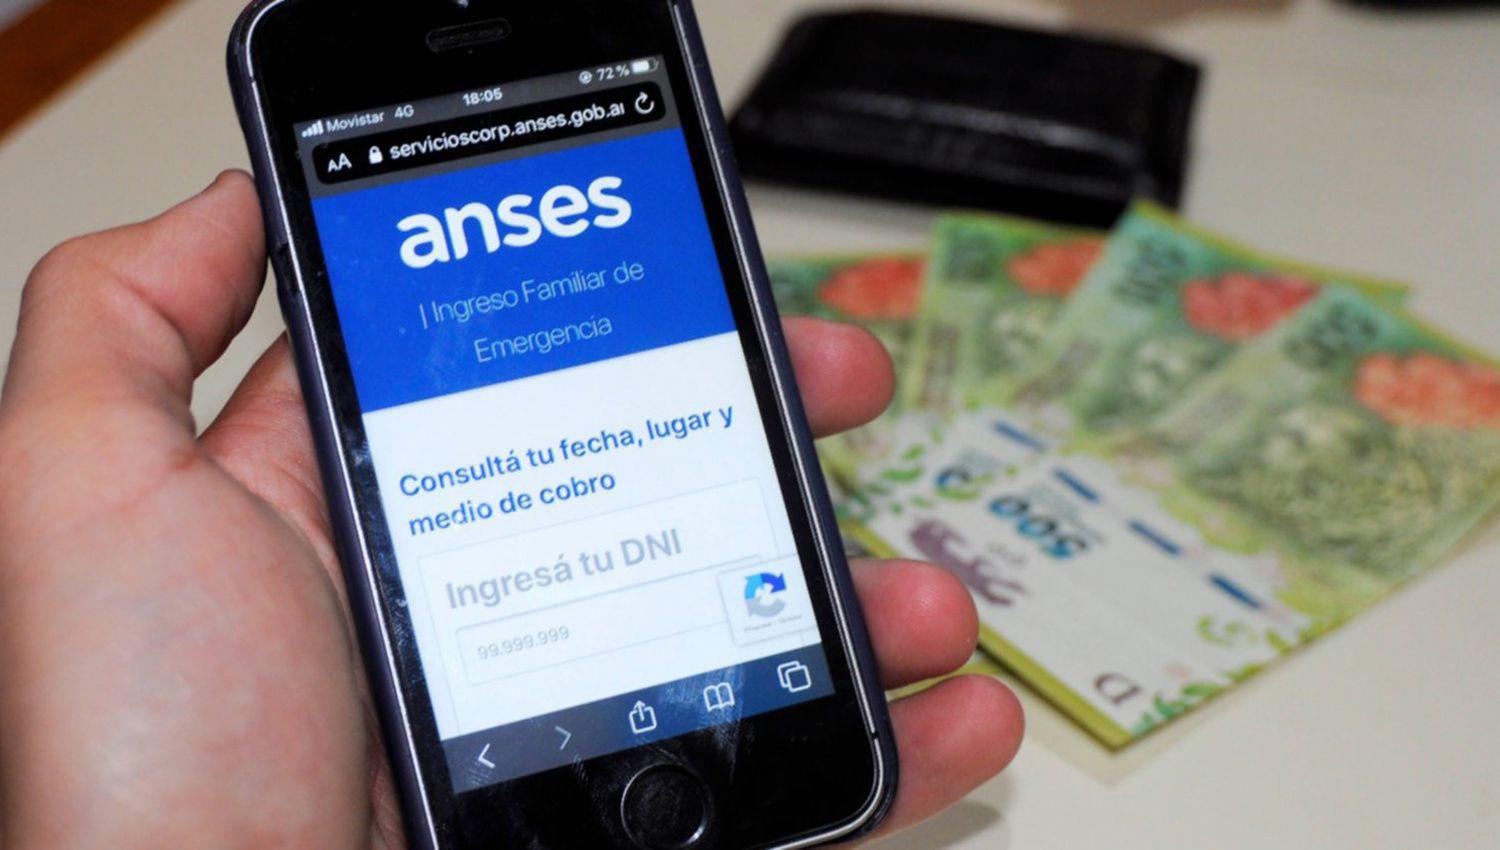 IFE 4- iquestqueacute va a pasar con el cuarto pago del bono de Anses